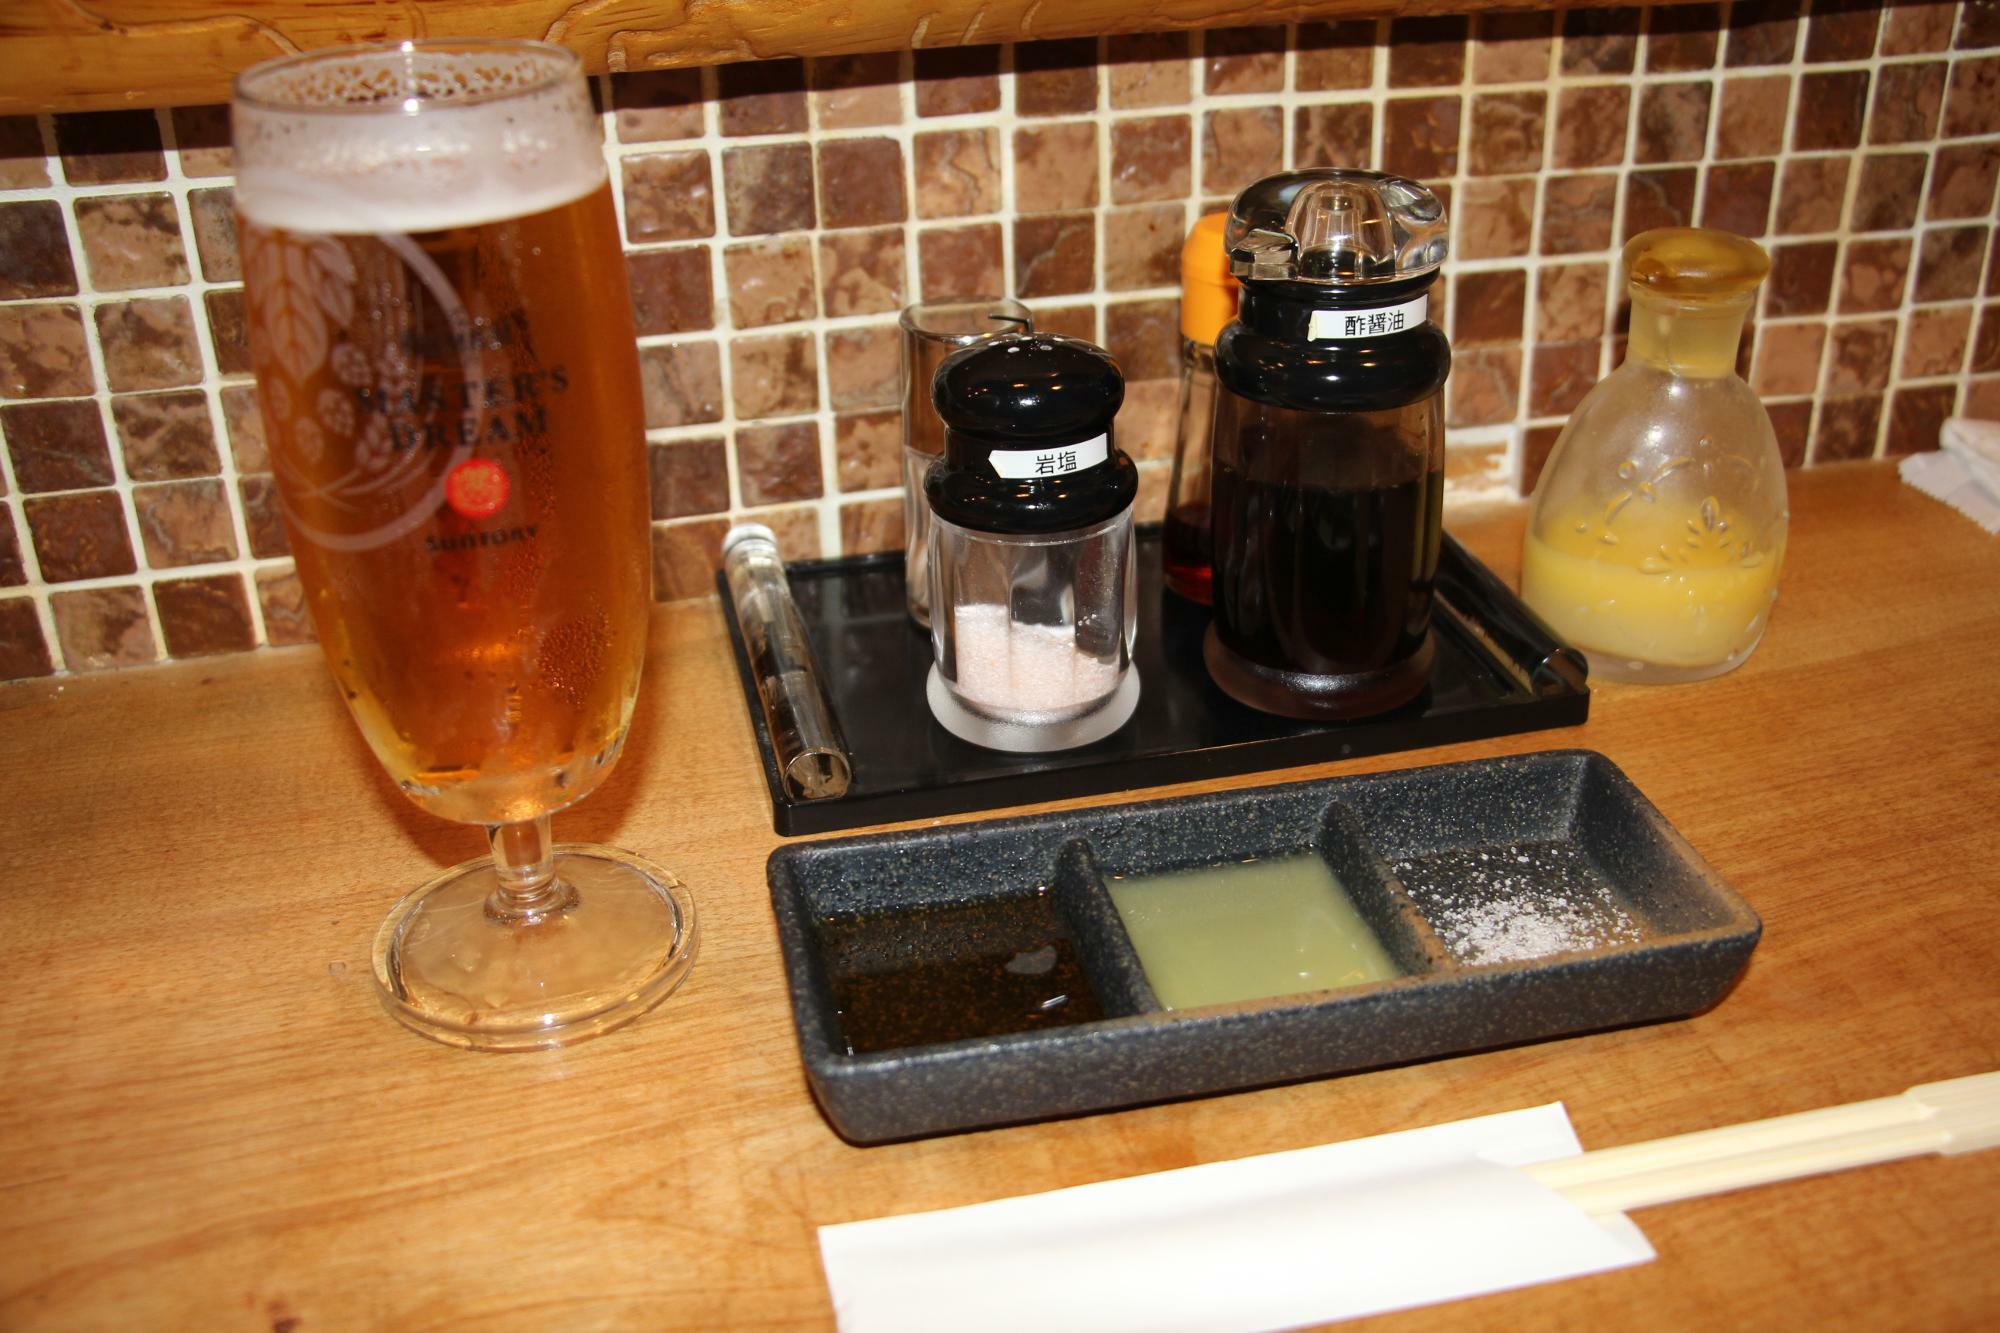 タレは3種類。左から酢醤油、すだち、岩塩